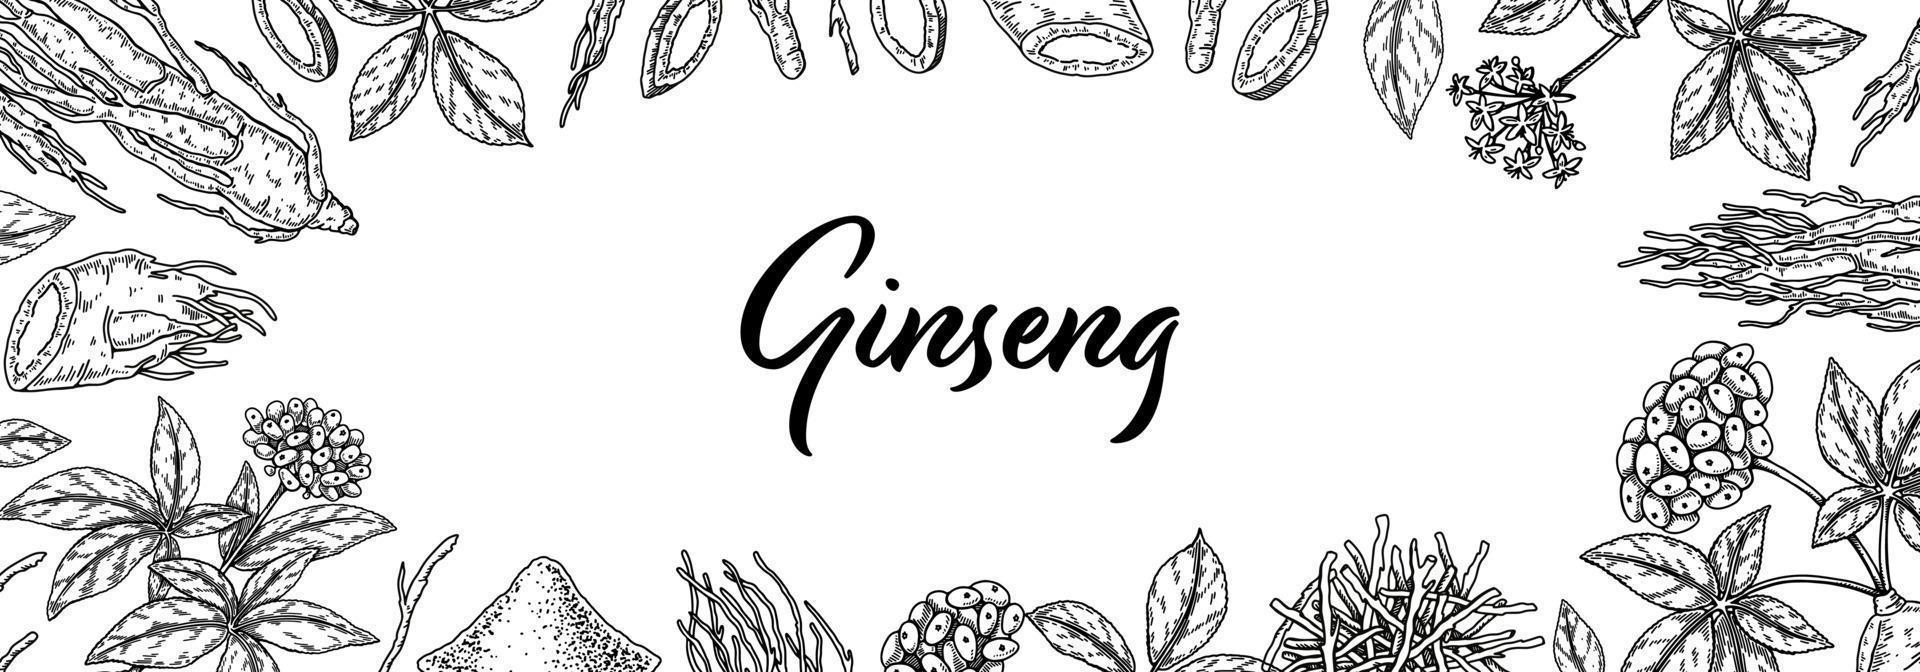 design horizontal de ginseng. mão desenhada ilustração vetorial botânica no estilo de desenho. pode ser usado para embalagem, etiqueta, crachá. fundo de fitoterapia vetor